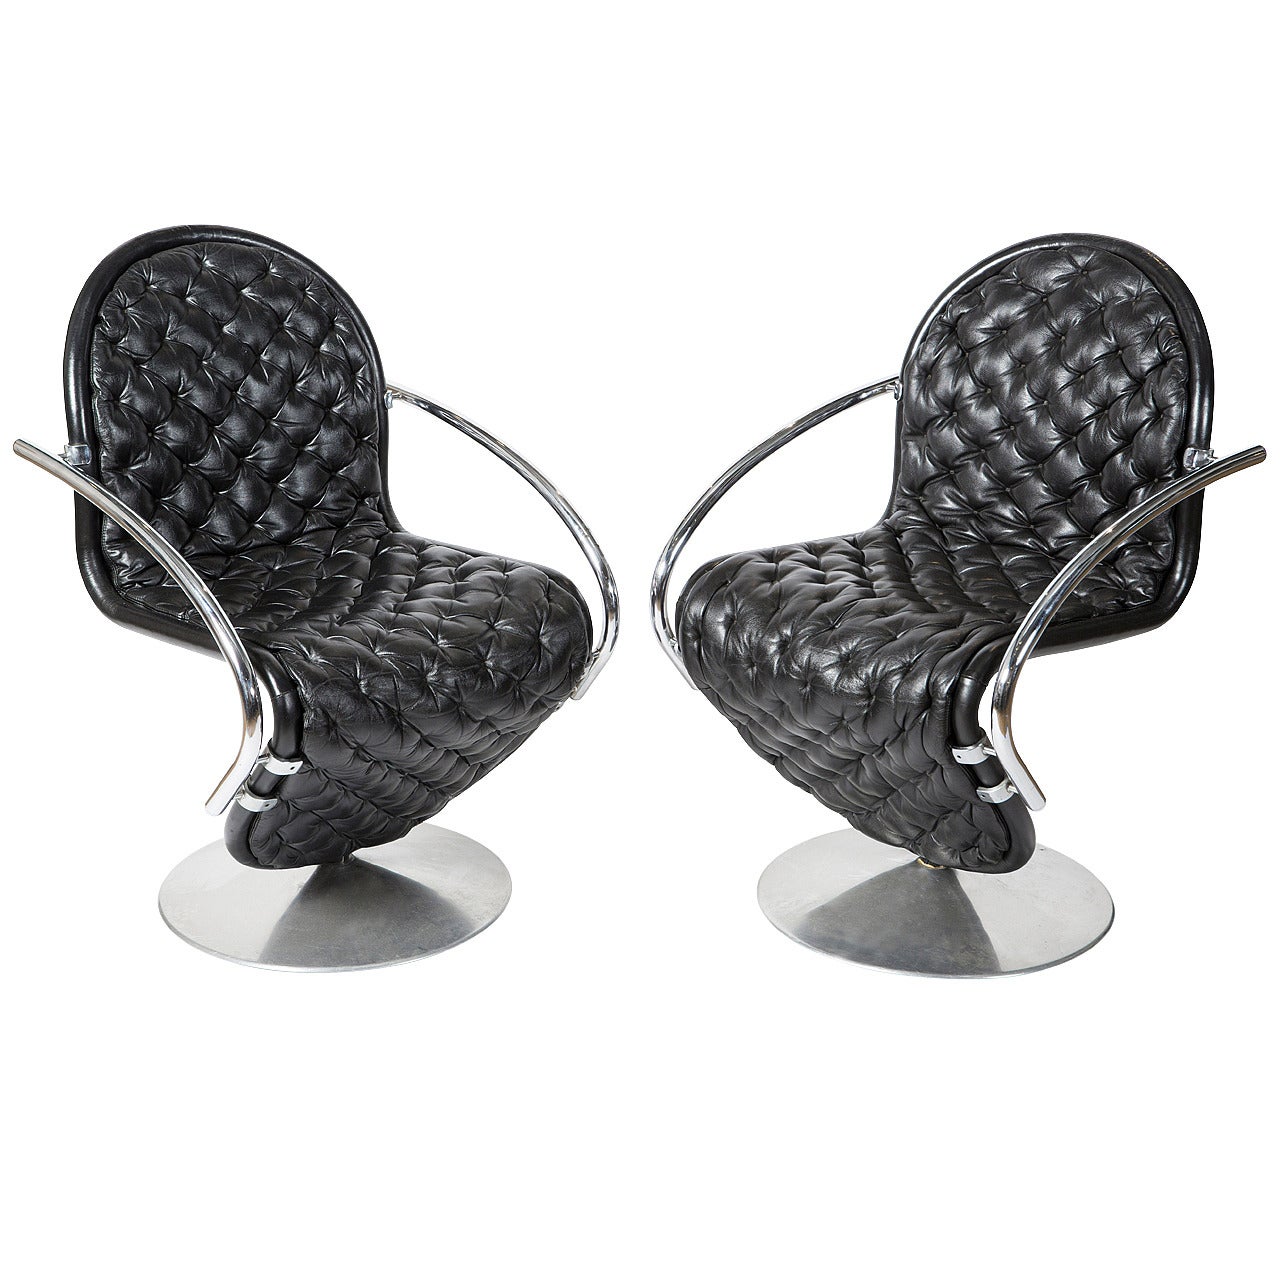 Pair of 1-2-3 Chairs by Verner Panton